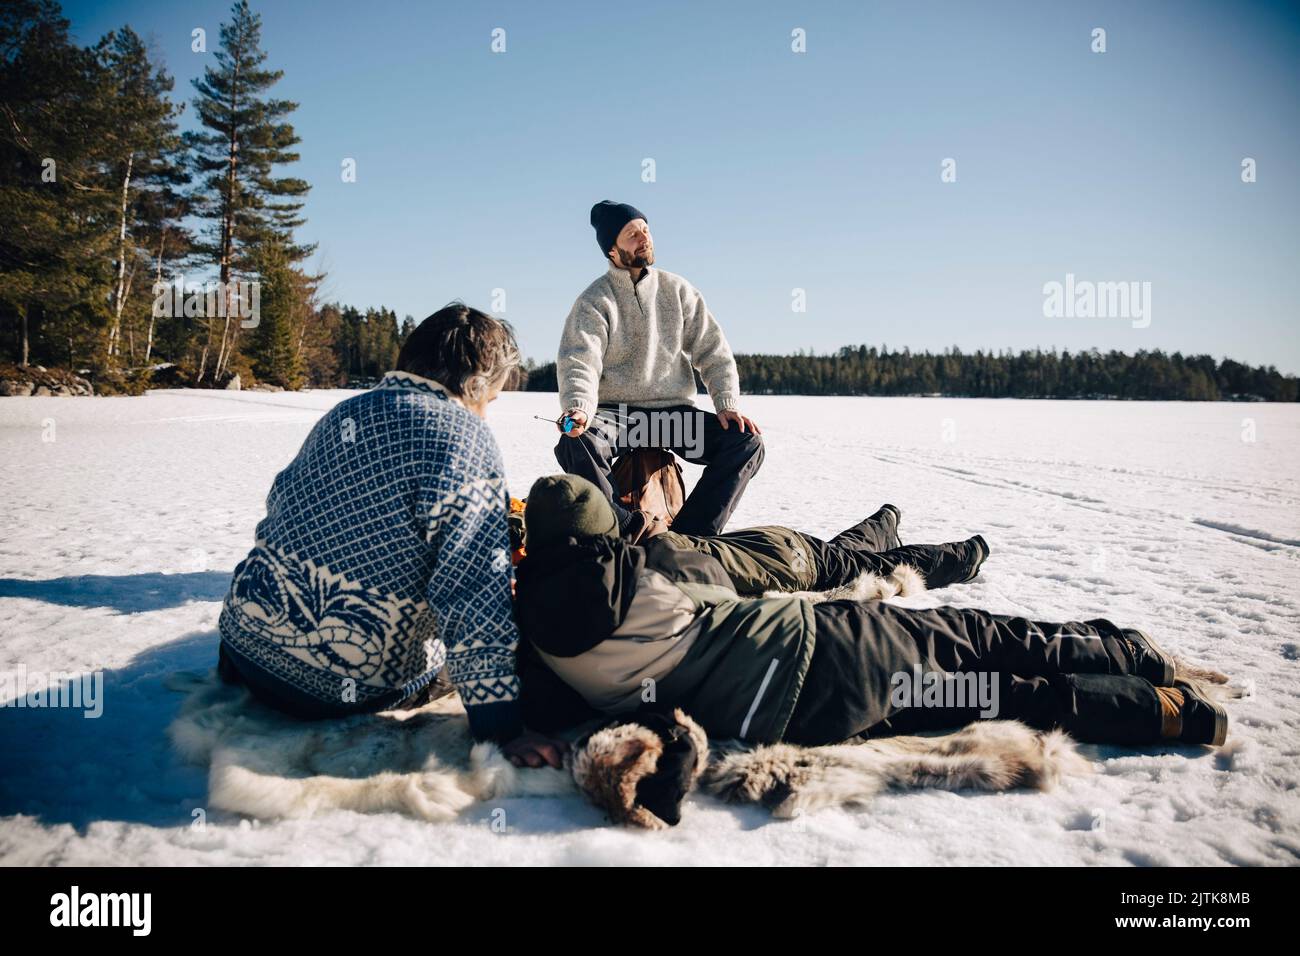 Vater und Sohn sitzen auf Tierhaut, während sie mit Freunden Eisfischen und im Winter sonnigen Tag genießen Stockfoto